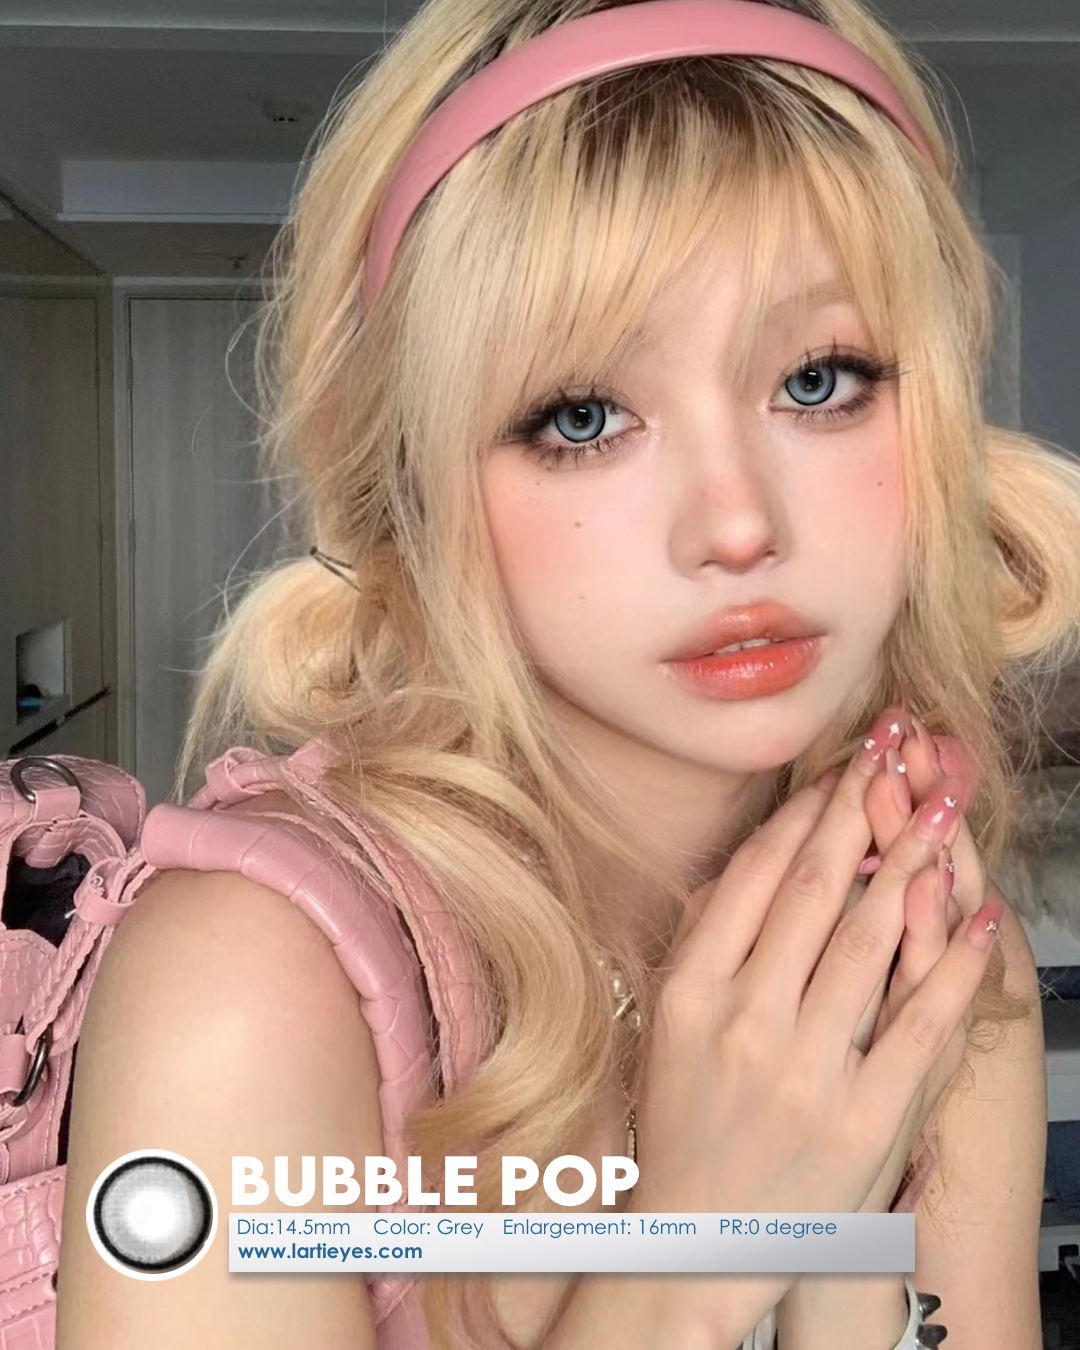 Bubble pop model 1